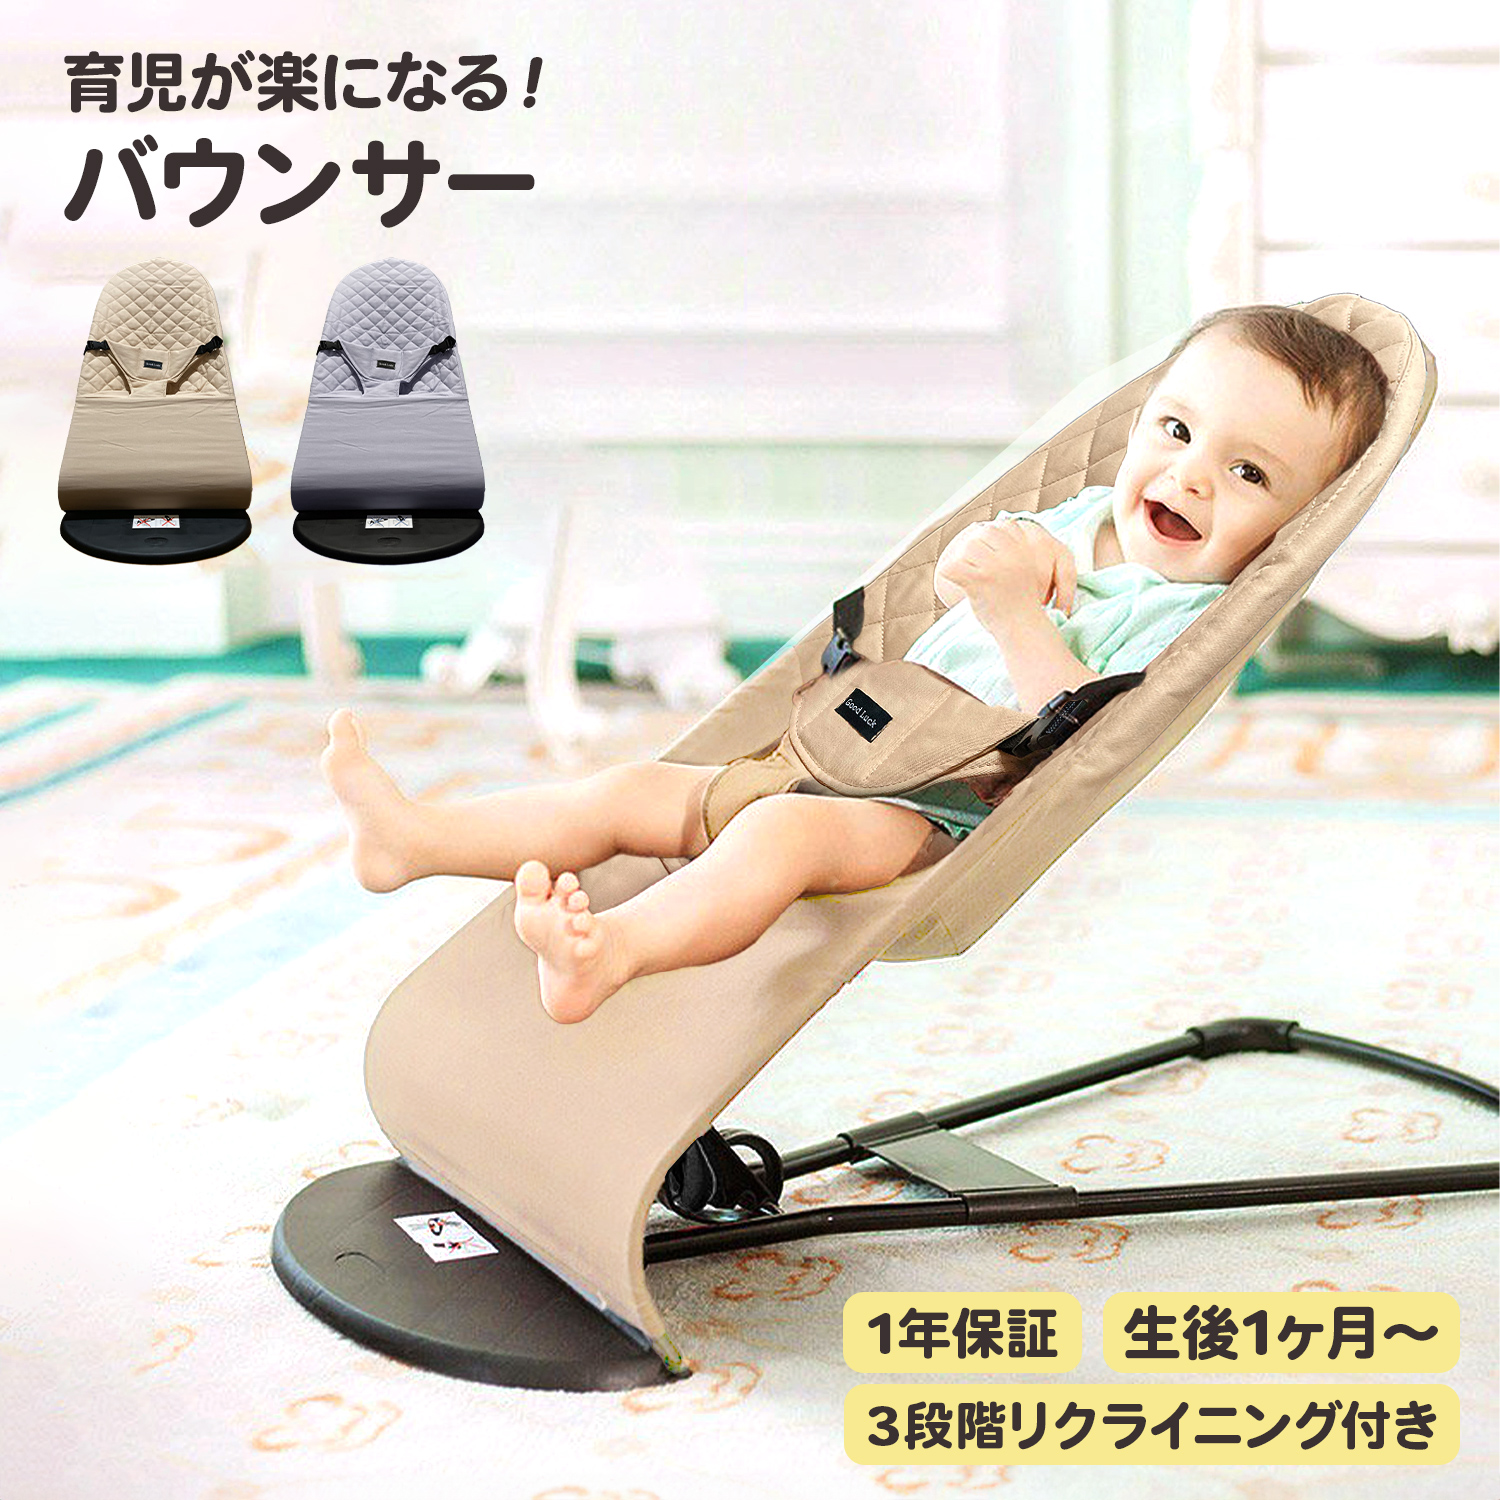 バウンサー 新生児 赤ちゃん バウンシングシート ベビー ゆりかご ベビーロッキングチェア リクライニング 赤ちゃん用品 折り畳み可能 3段階調整 ベビーチェア